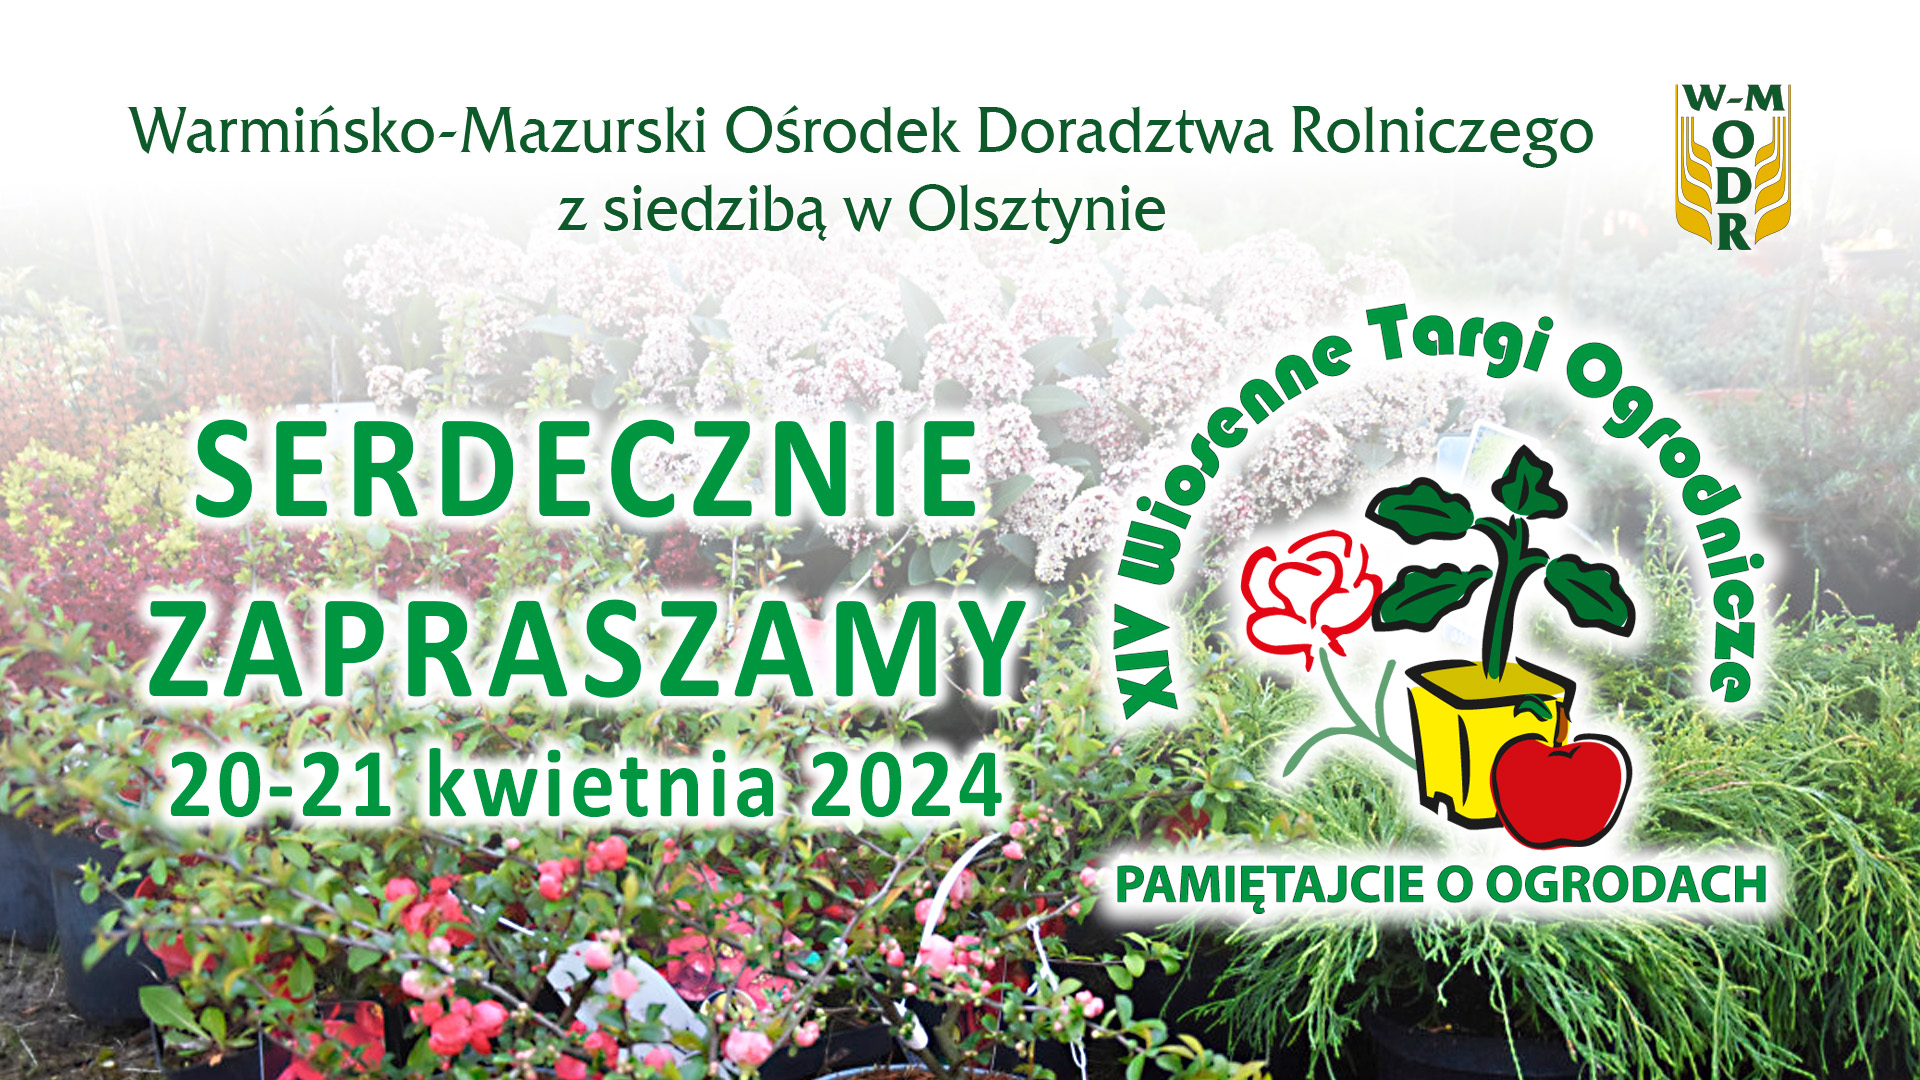 Zaplanuj swój sukces na XIV Wiosennych Targach Ogrodniczych "Pamiętajcie o ogrodach"! 20-21 kwietnia 2024 roku